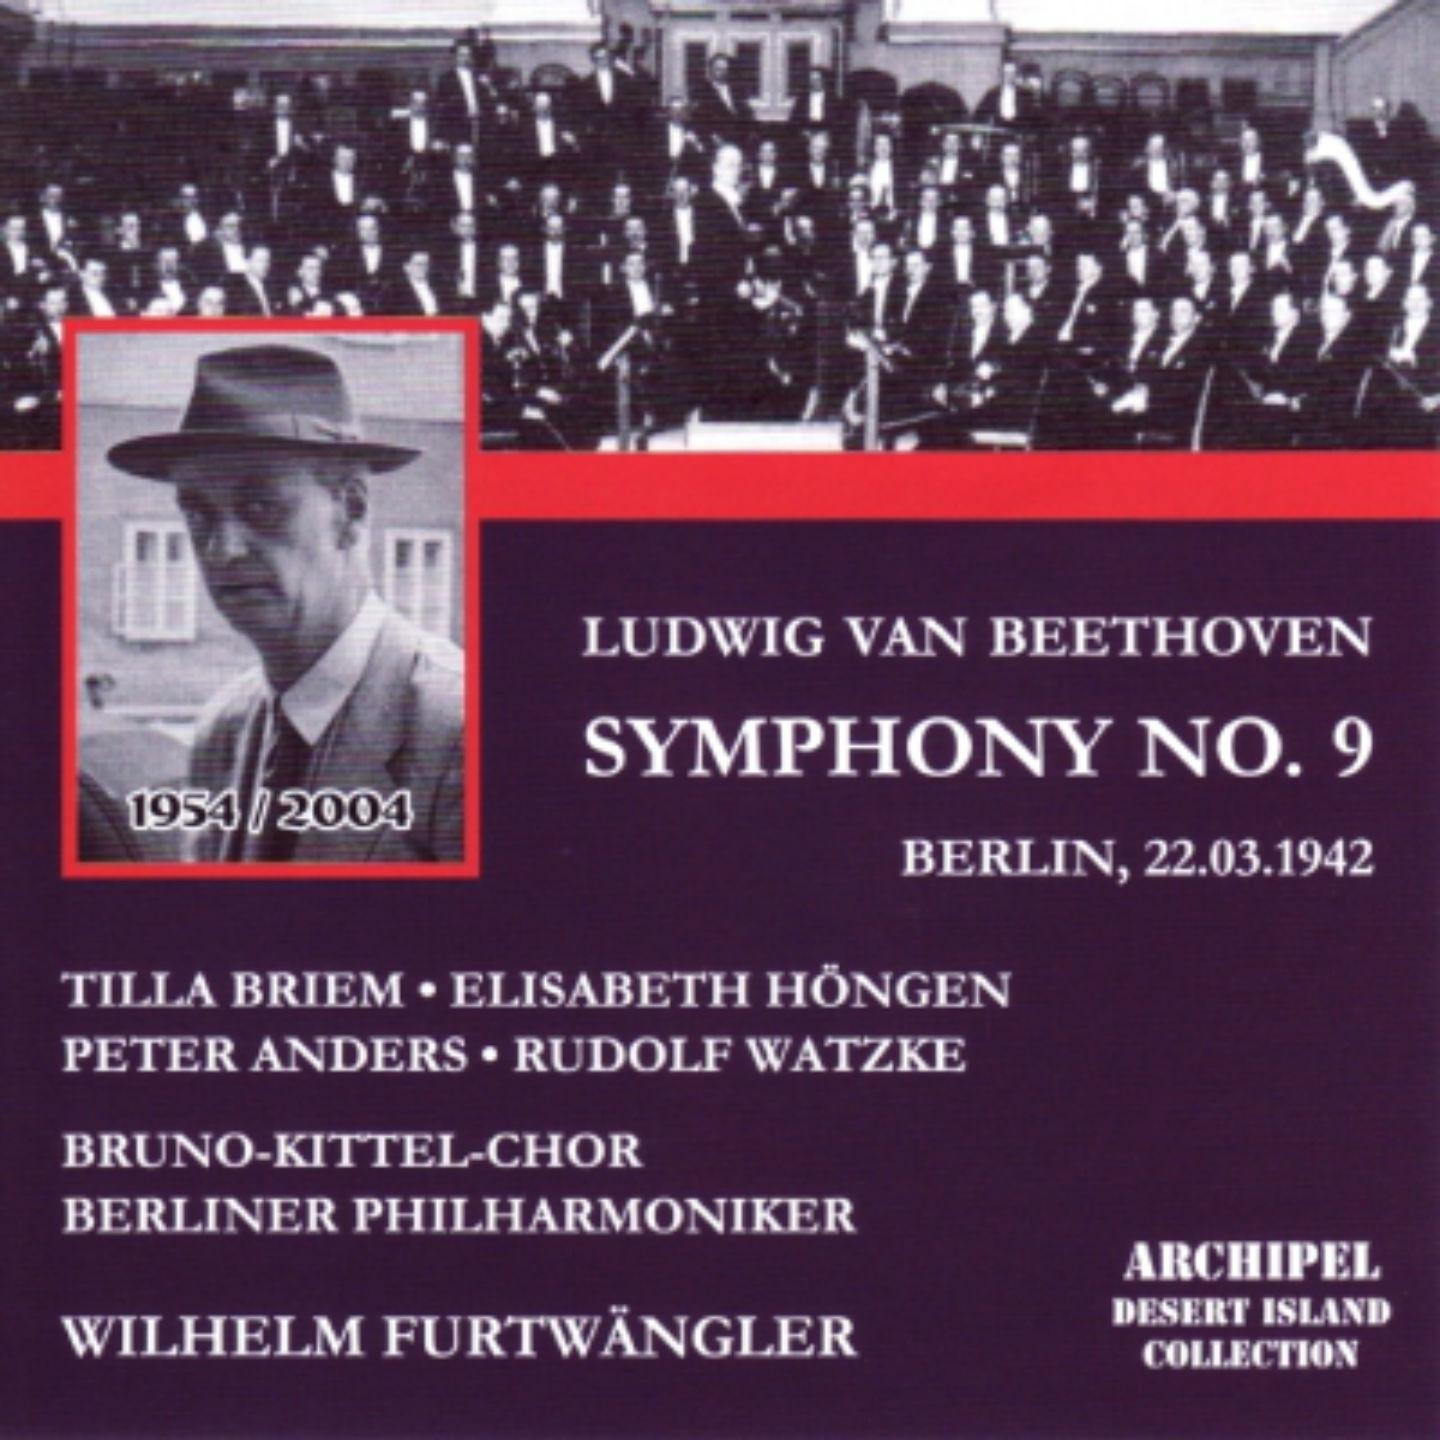 Symphony No. 9 in D Minor, Op. 125 "Choral": III. Adagio molto e cantabile